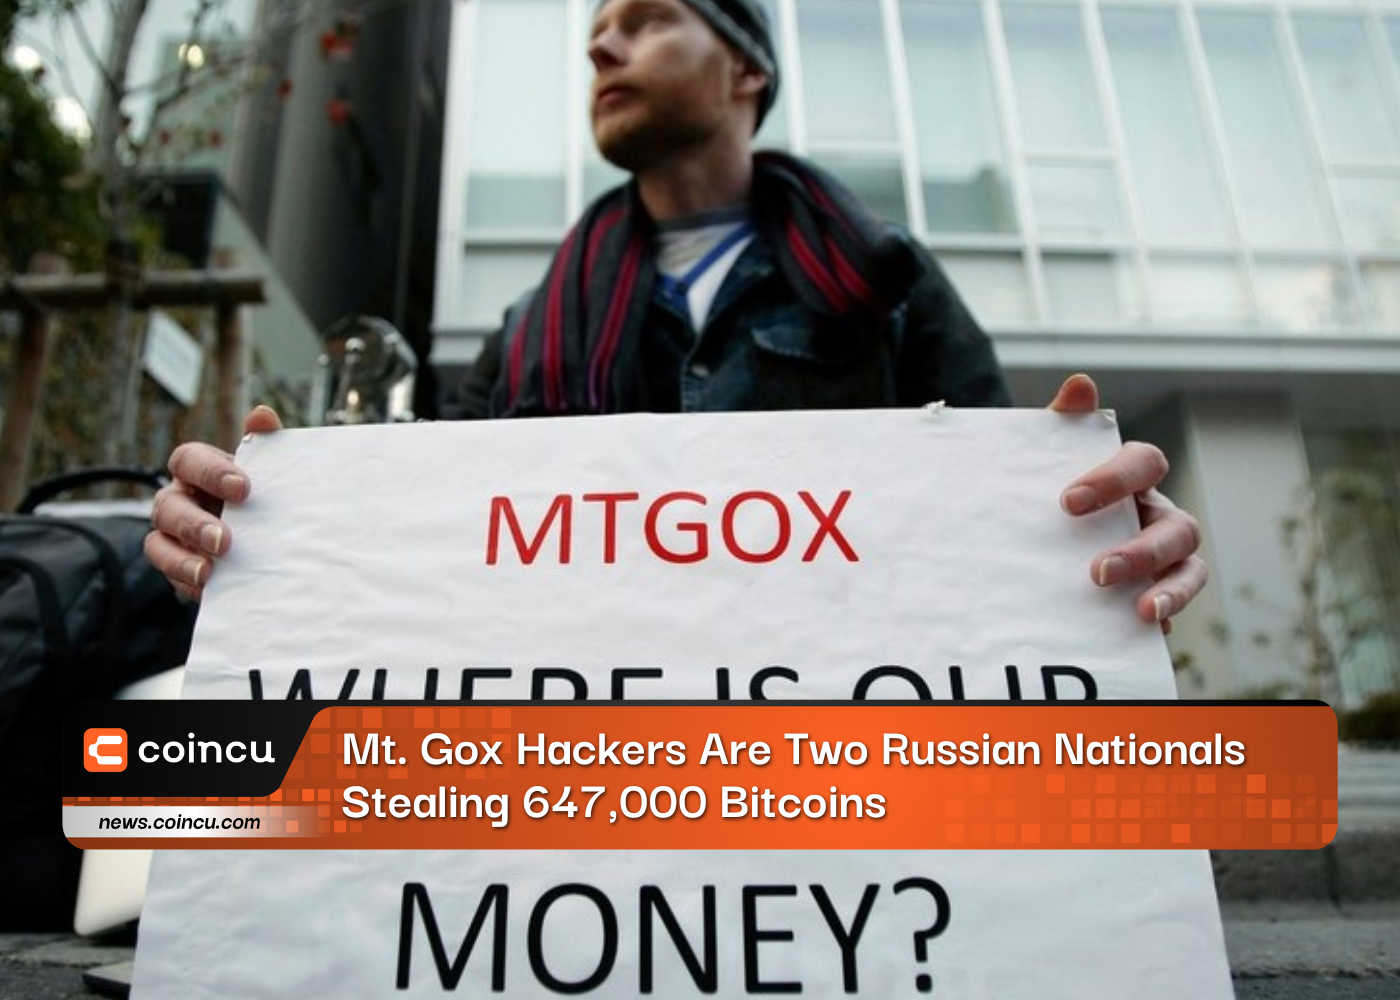 Mt. Gox 해커는 647,000 비트코인을 훔친 두 명의 러시아 국민입니다.